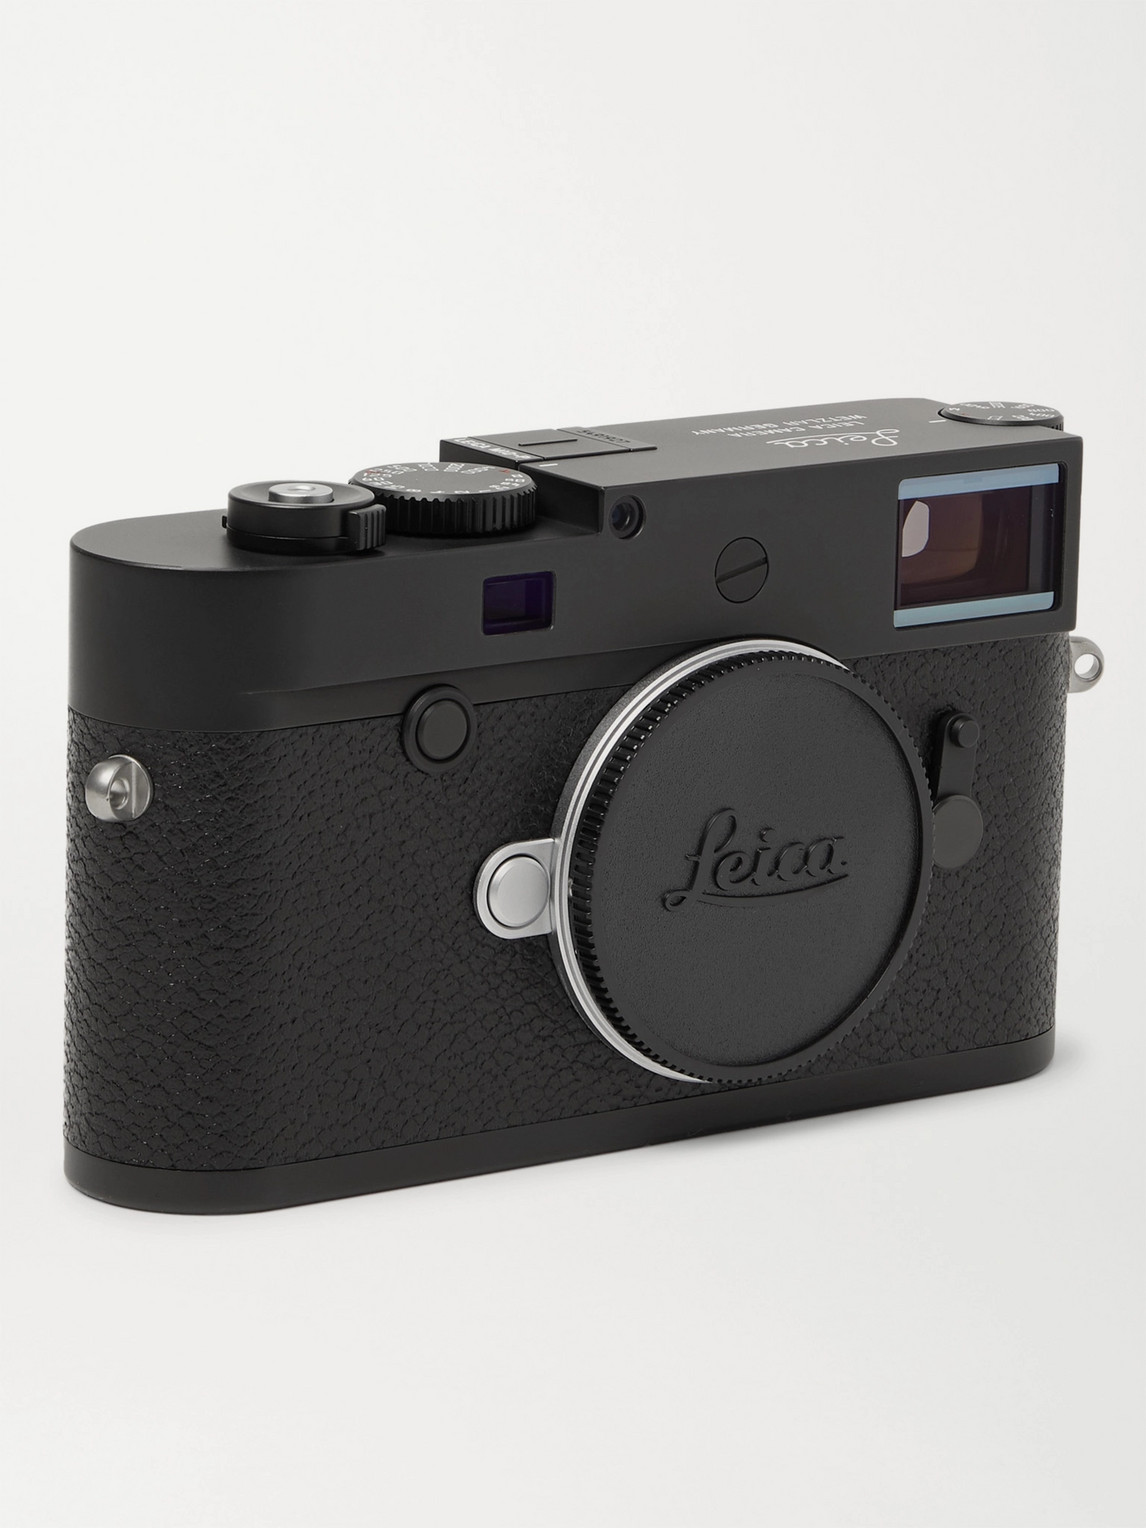 Leica M10-p Digital Camera In Black